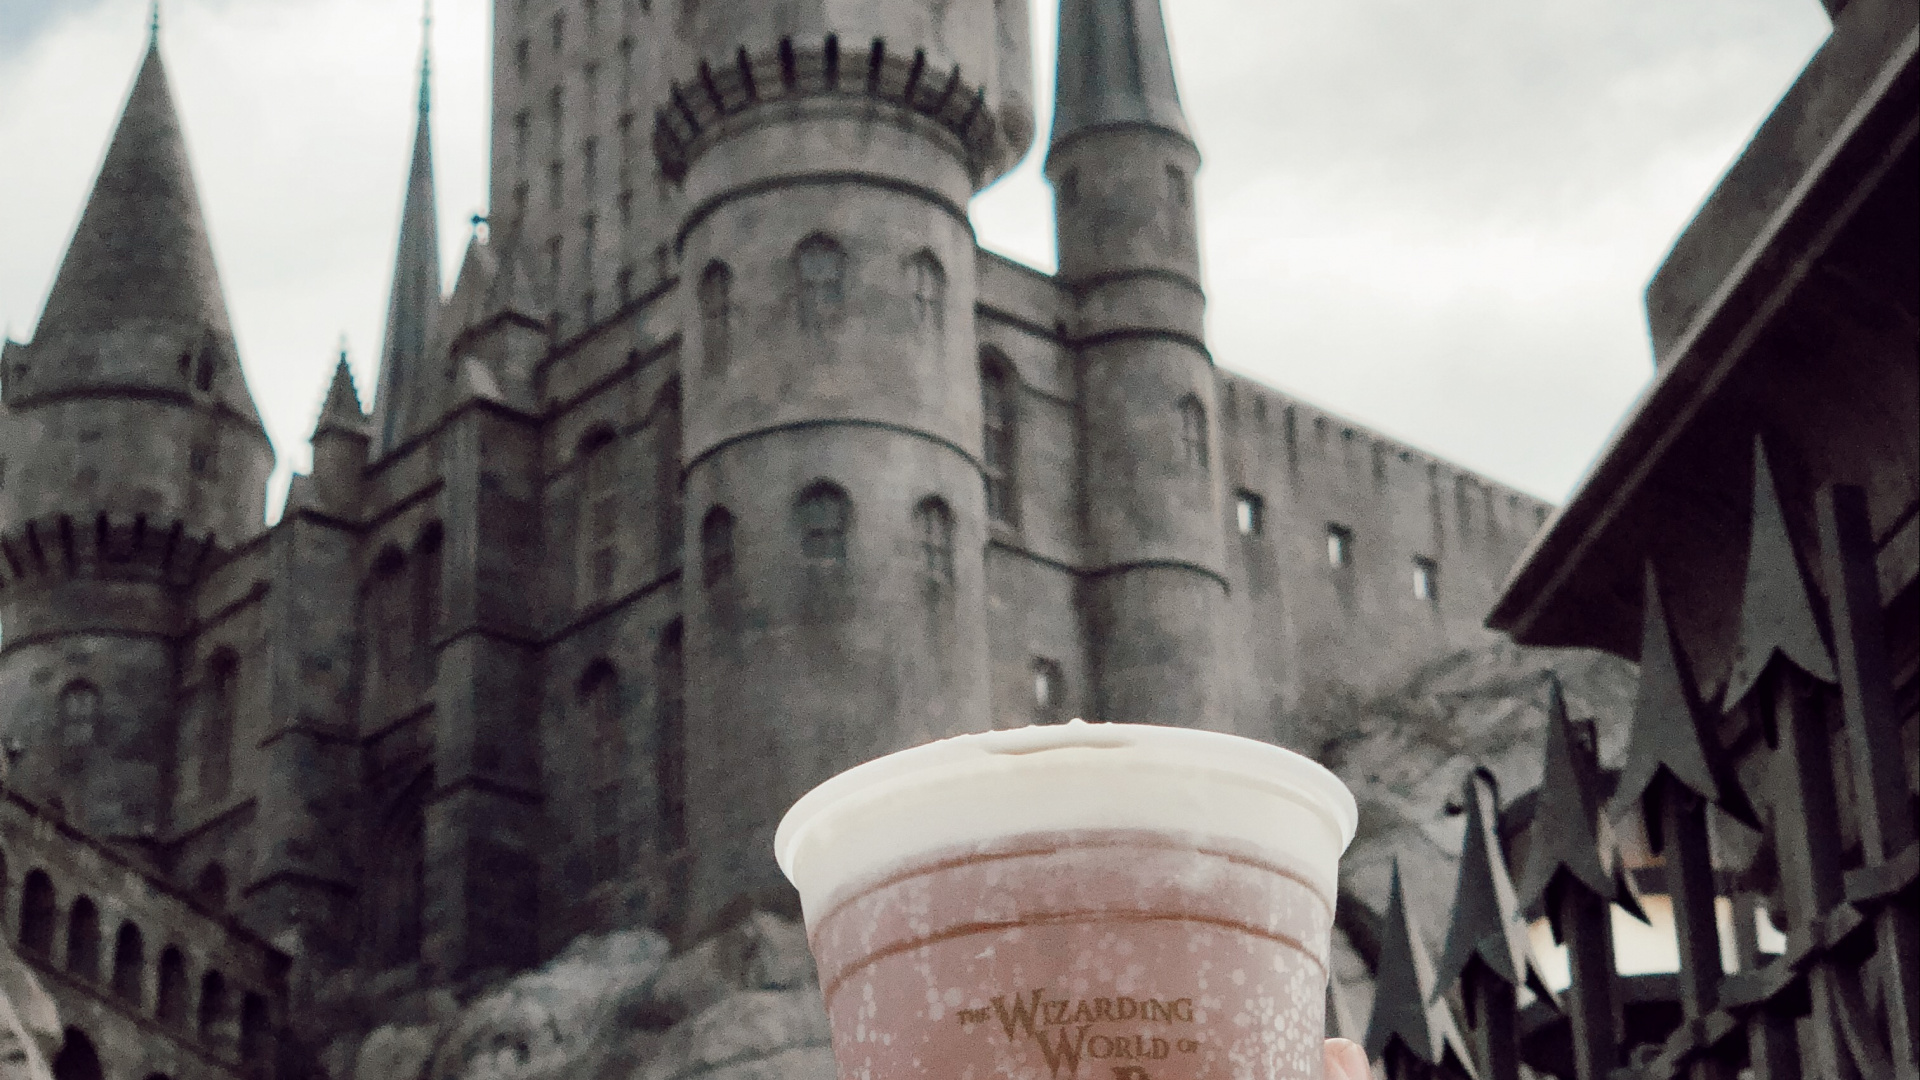 Hogwarts, 城堡, 尖顶, 炮塔, 中世纪建筑风格 壁纸 1920x1080 允许